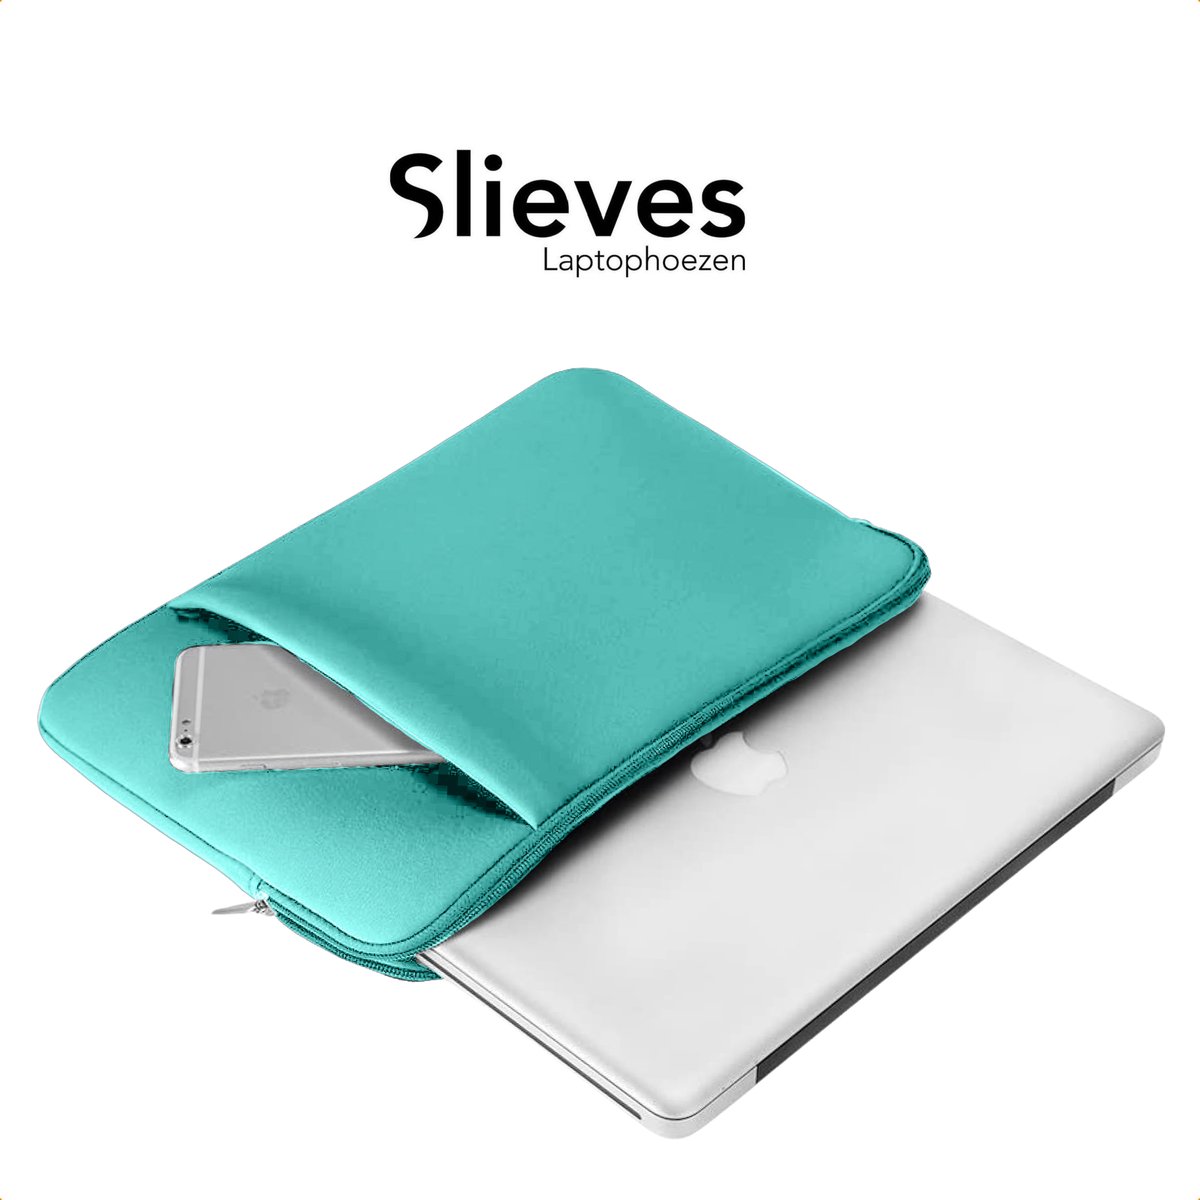 Slieves - Laptophoes - 15.6 inch - Laptop Sleeve - Schok Resistent - met Opbergvak - Neoprene - Blauw